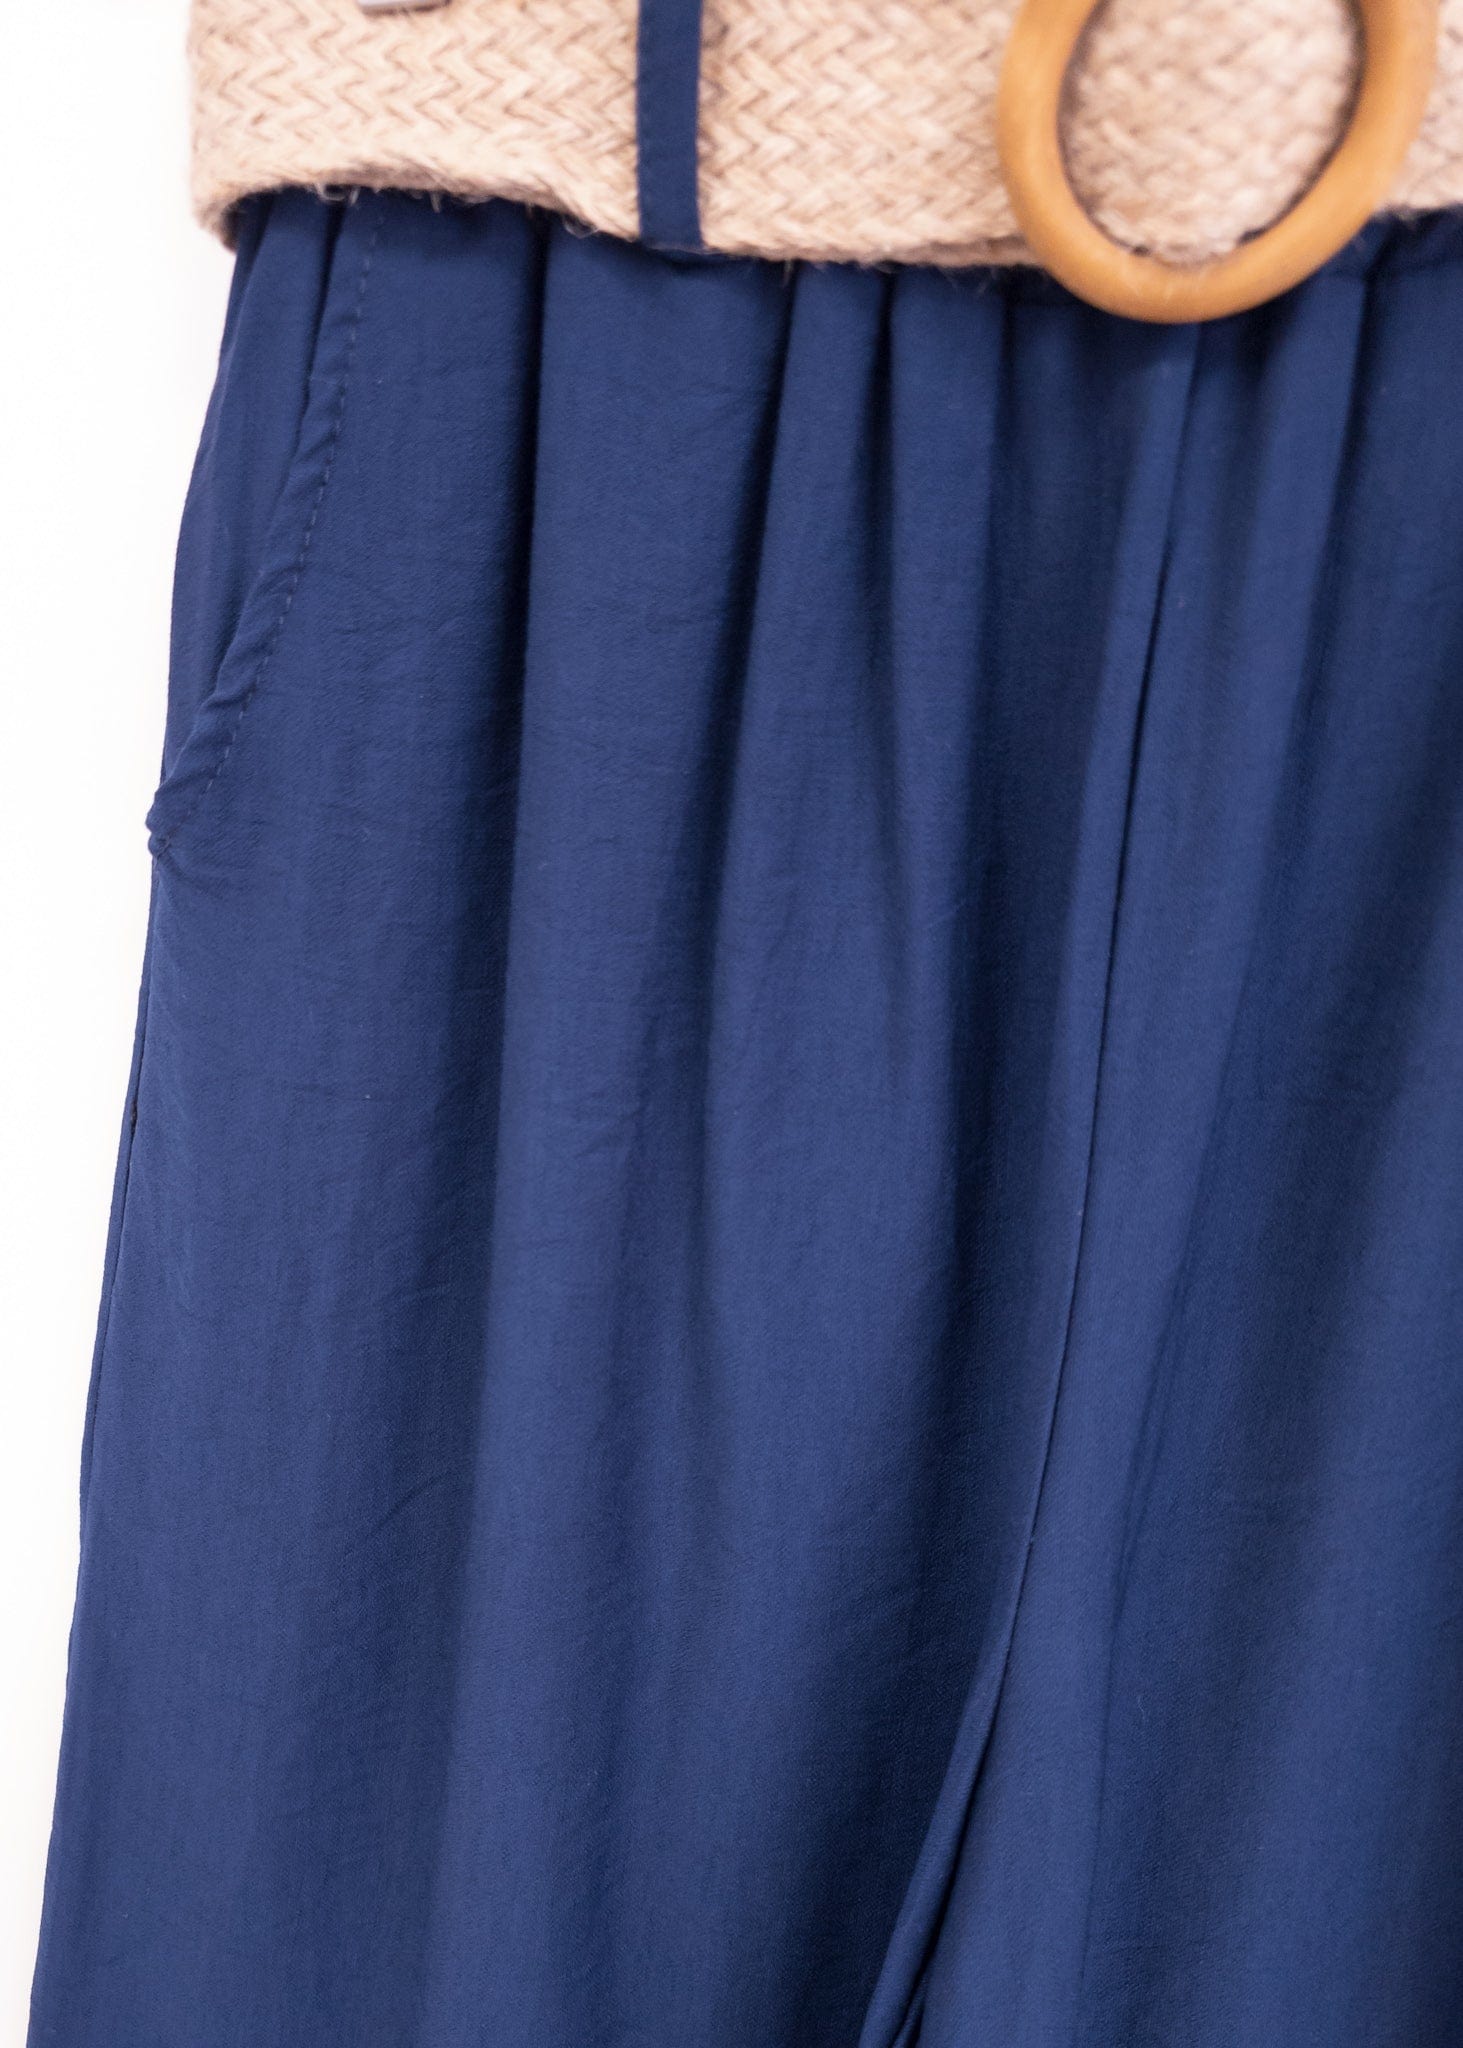 K-GUAPA Única Pantalón efecto lino azul marino Conte